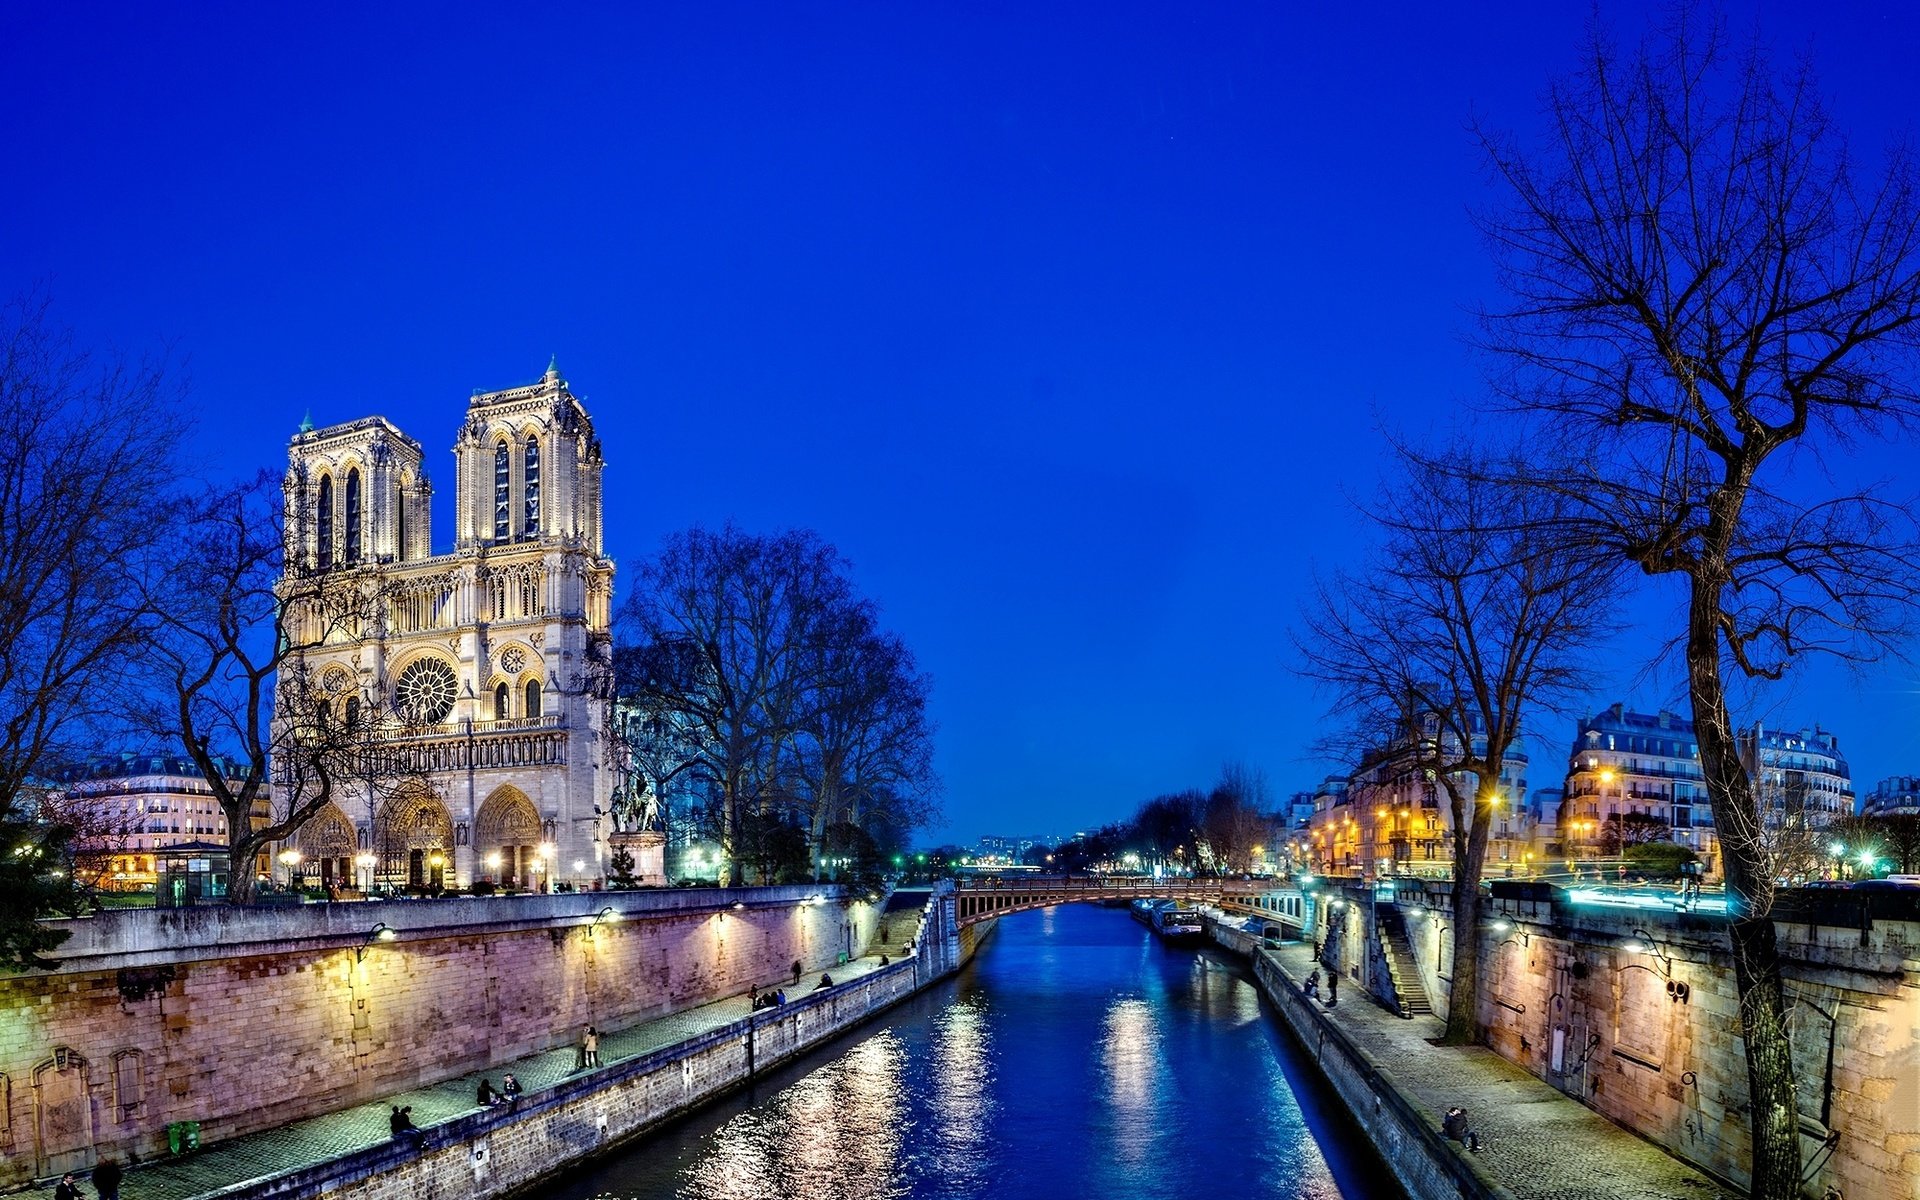 Download hd 1920x1200 Notre Dame De Paris PC background ID:483678 for free